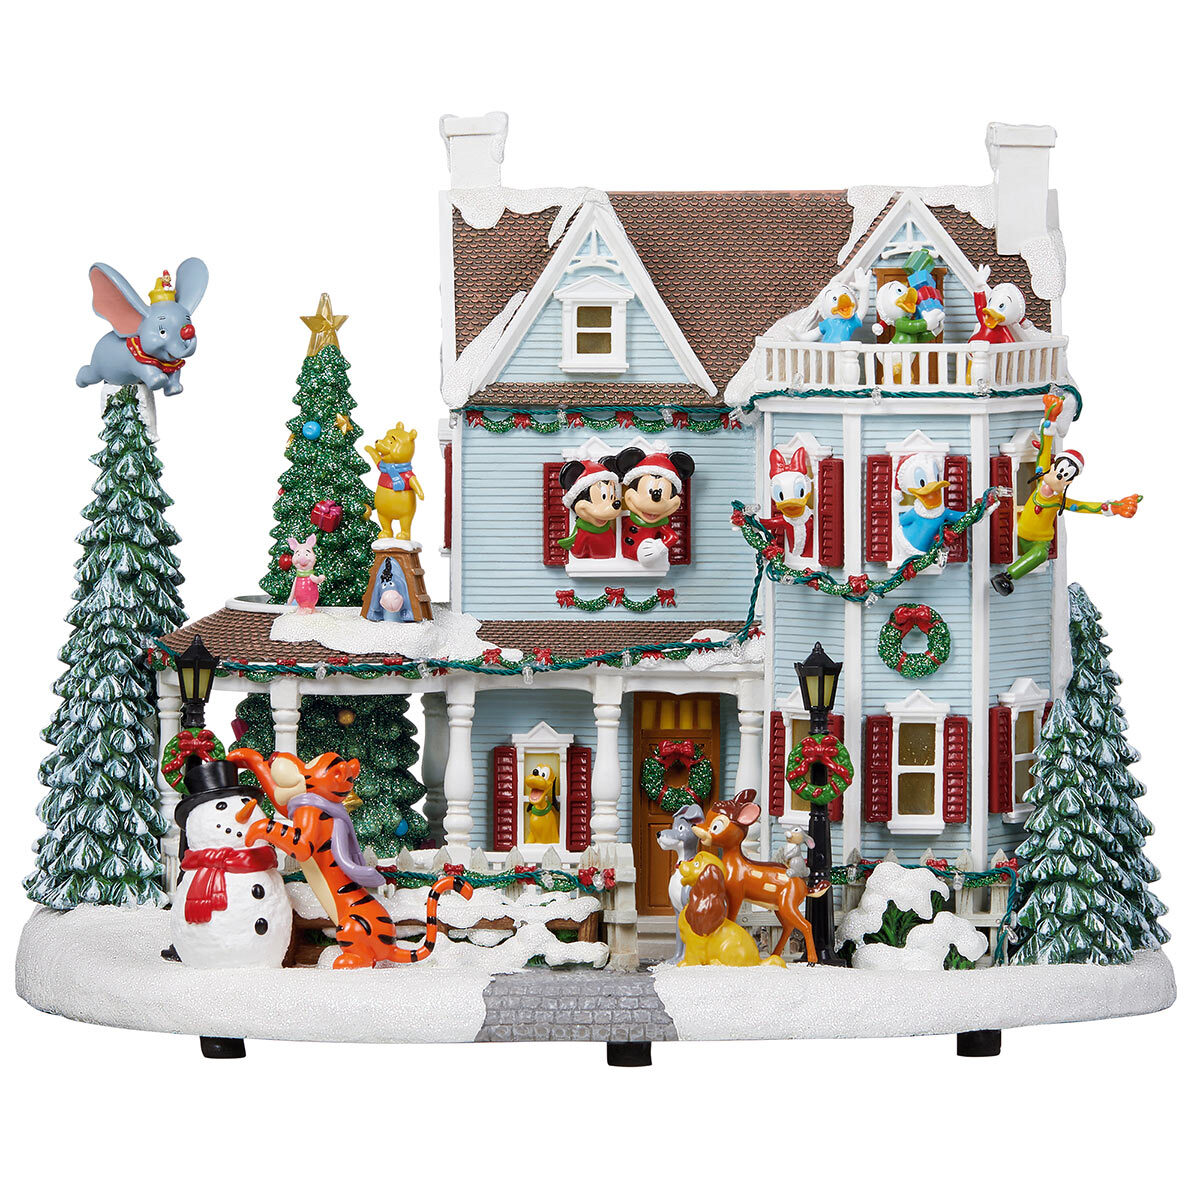 Buy Disney Animated Holiday House Plain Image at Costco.co.uk